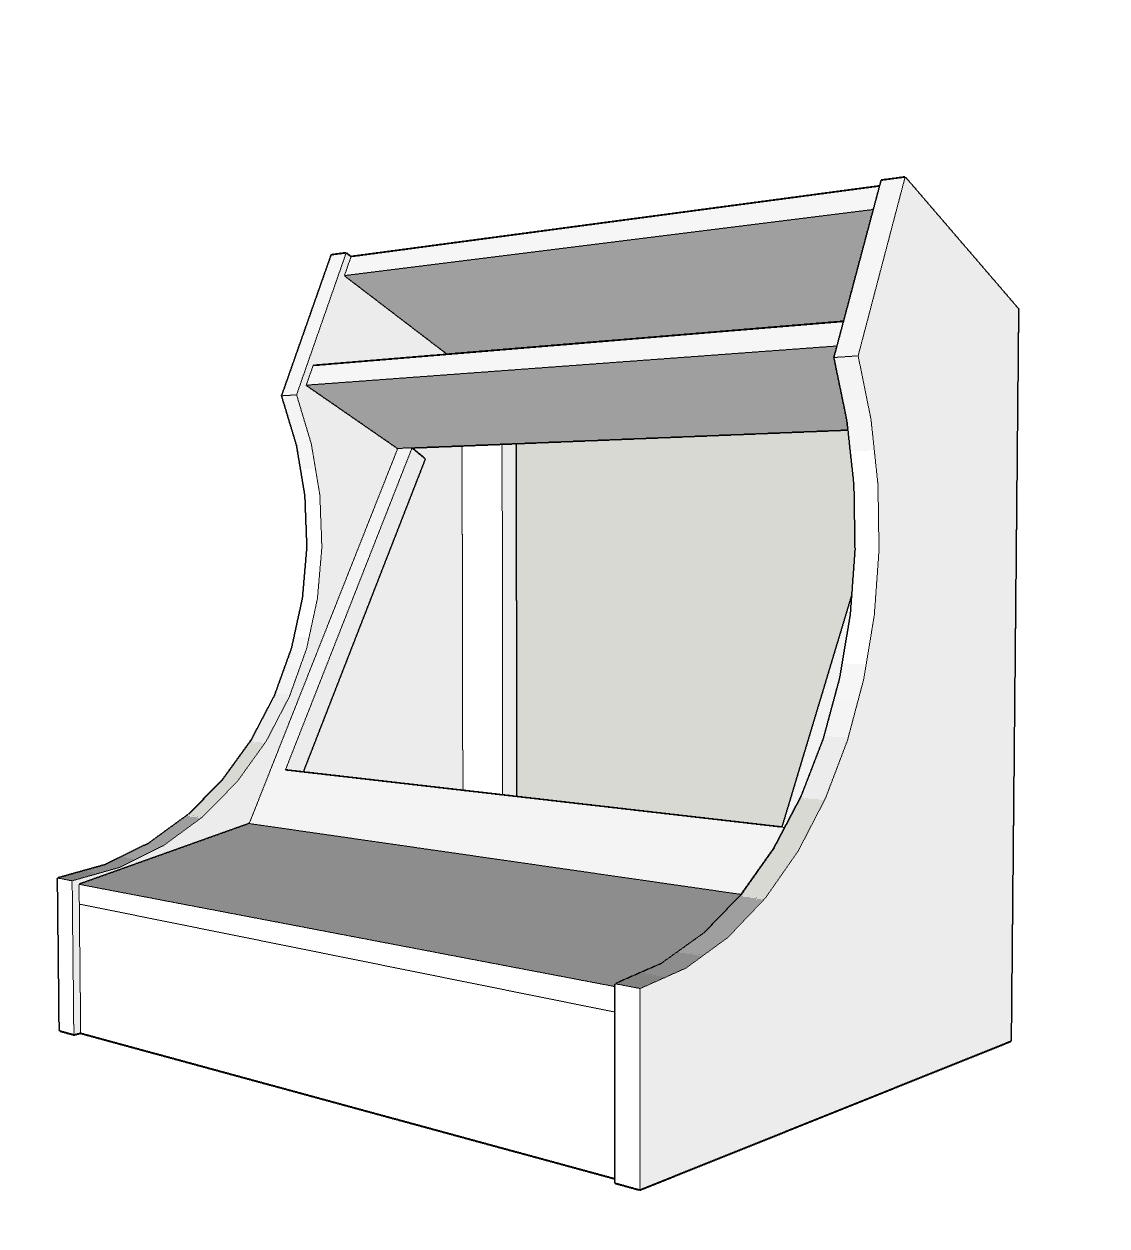 Bartop Arcade Cabinet Plans